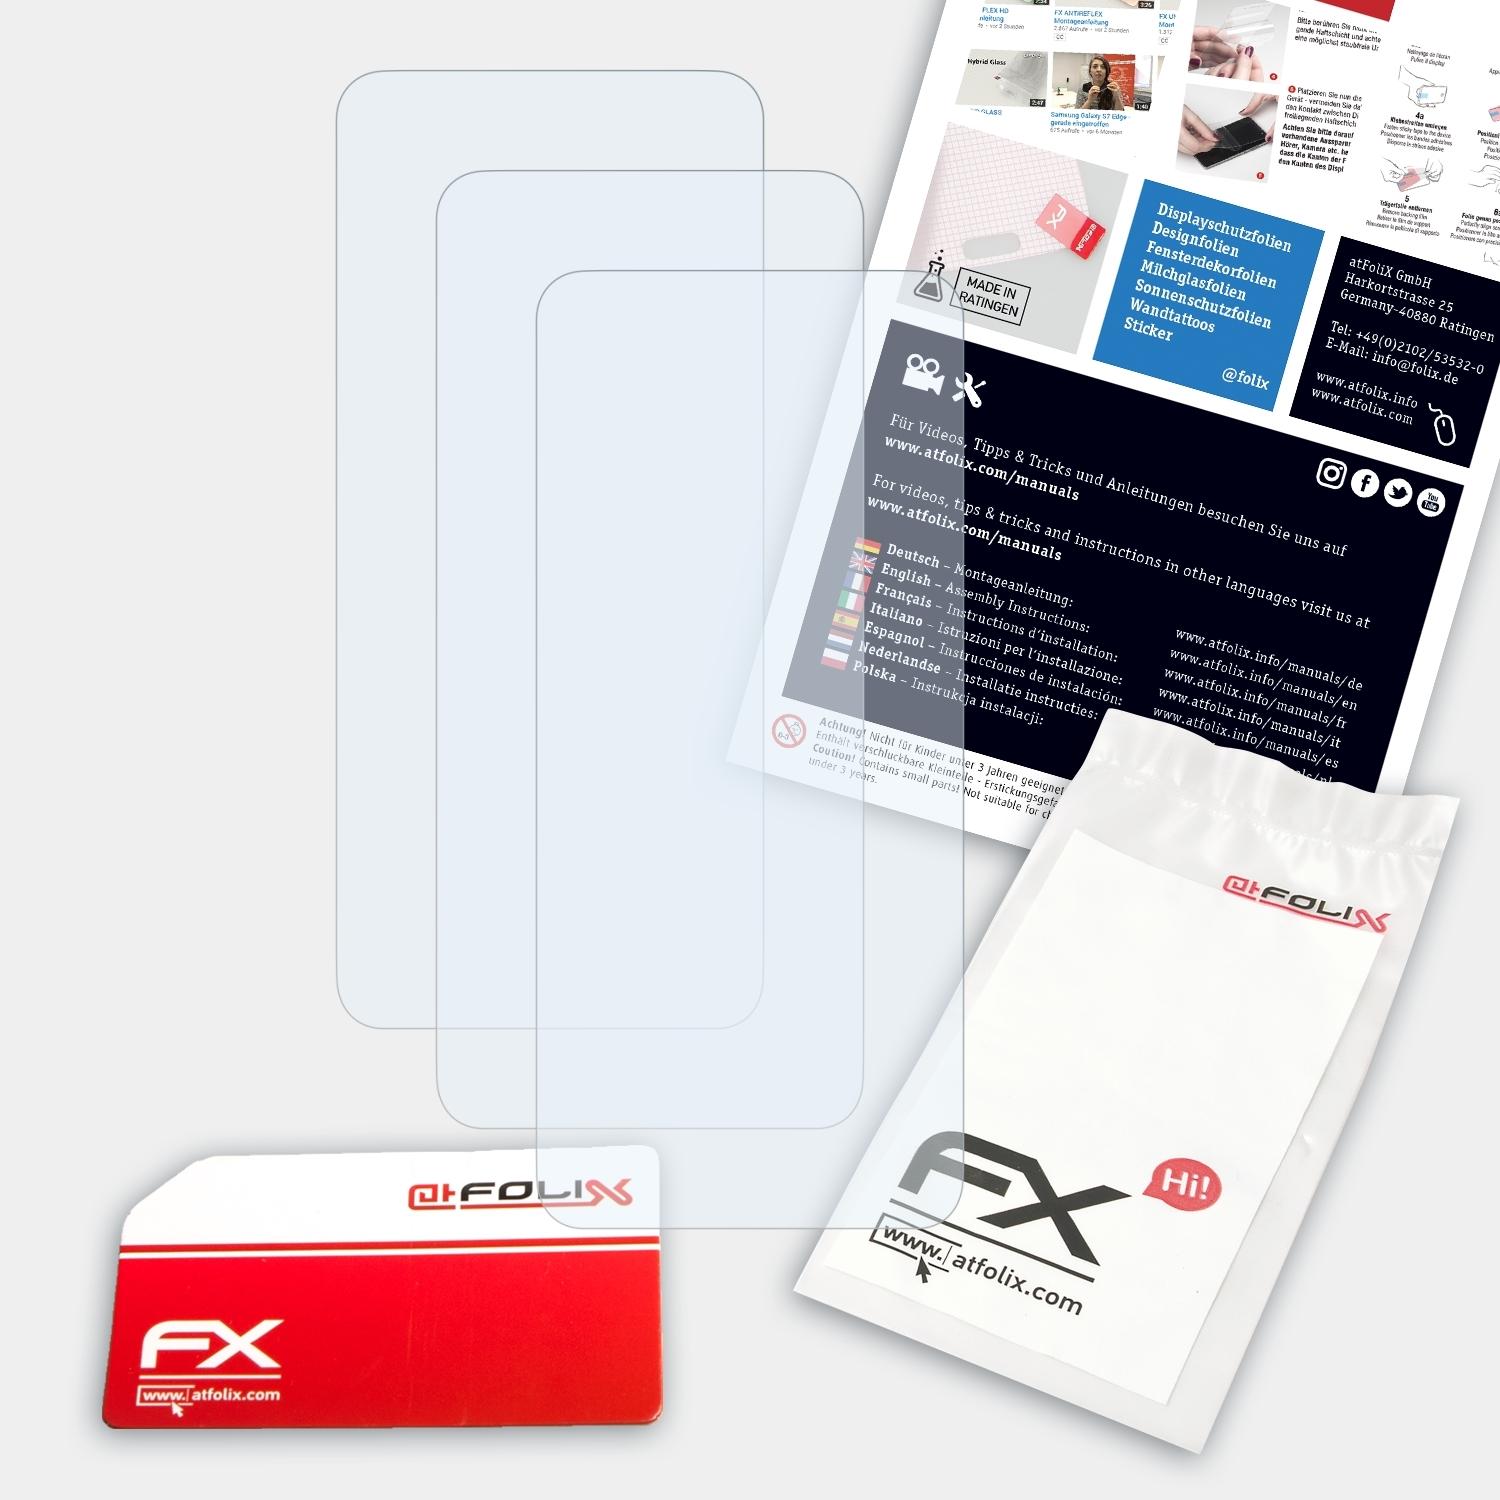 Xtreme) ATFOLIX 3x X6 Displayschutz(für Soul FX-Clear Allview